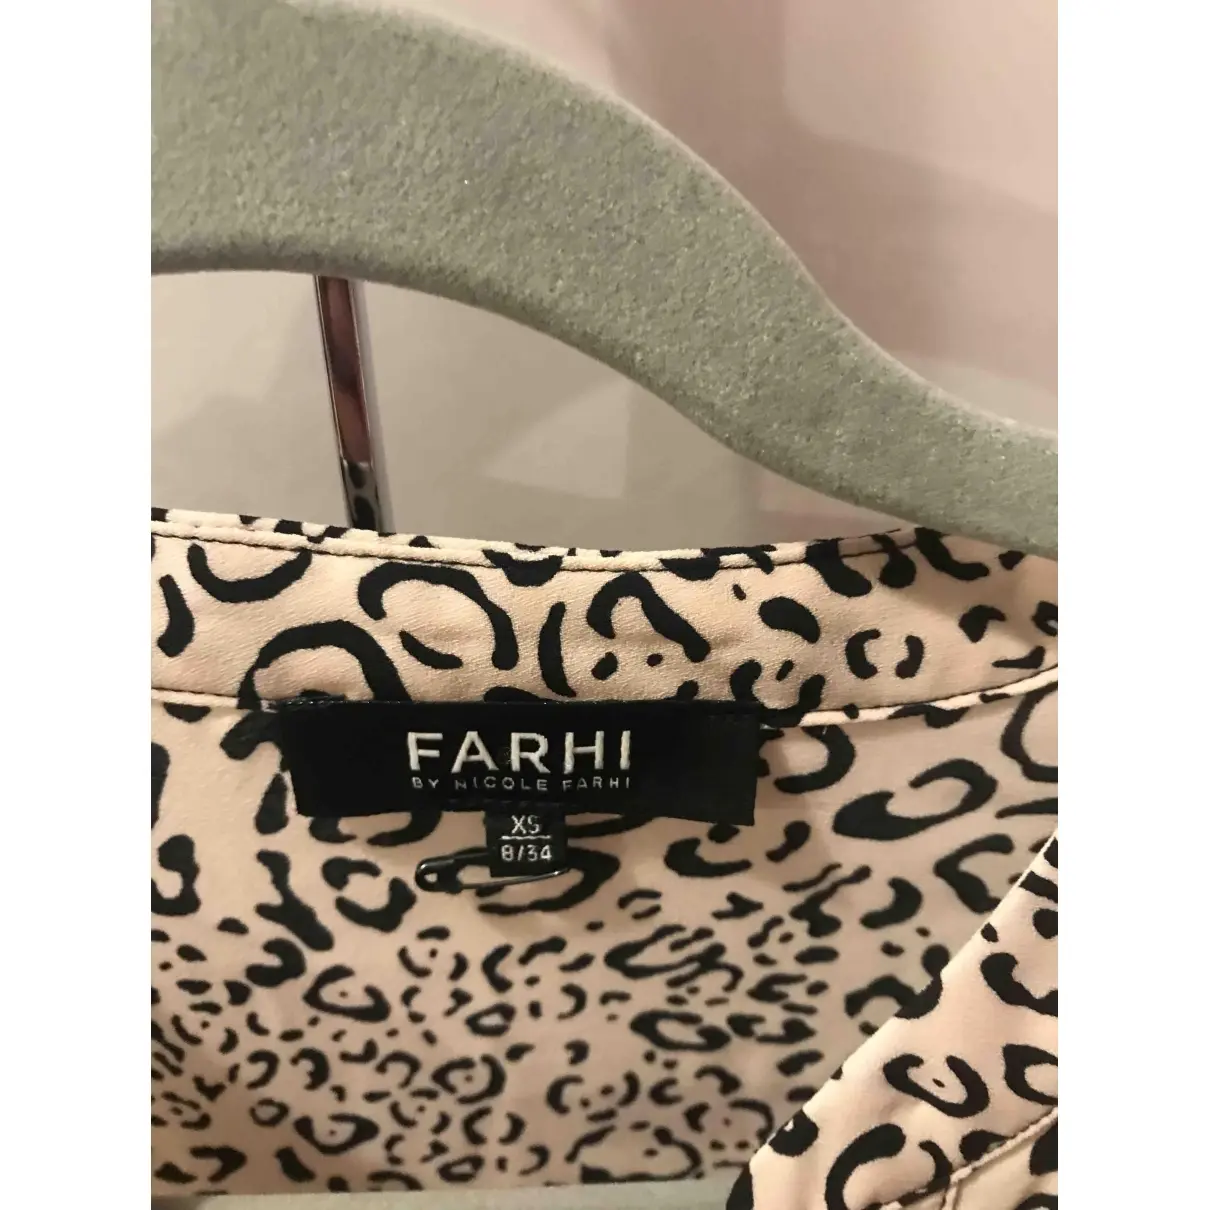 Buy Farhi by Nicole Farhi Beige Polyester Top online